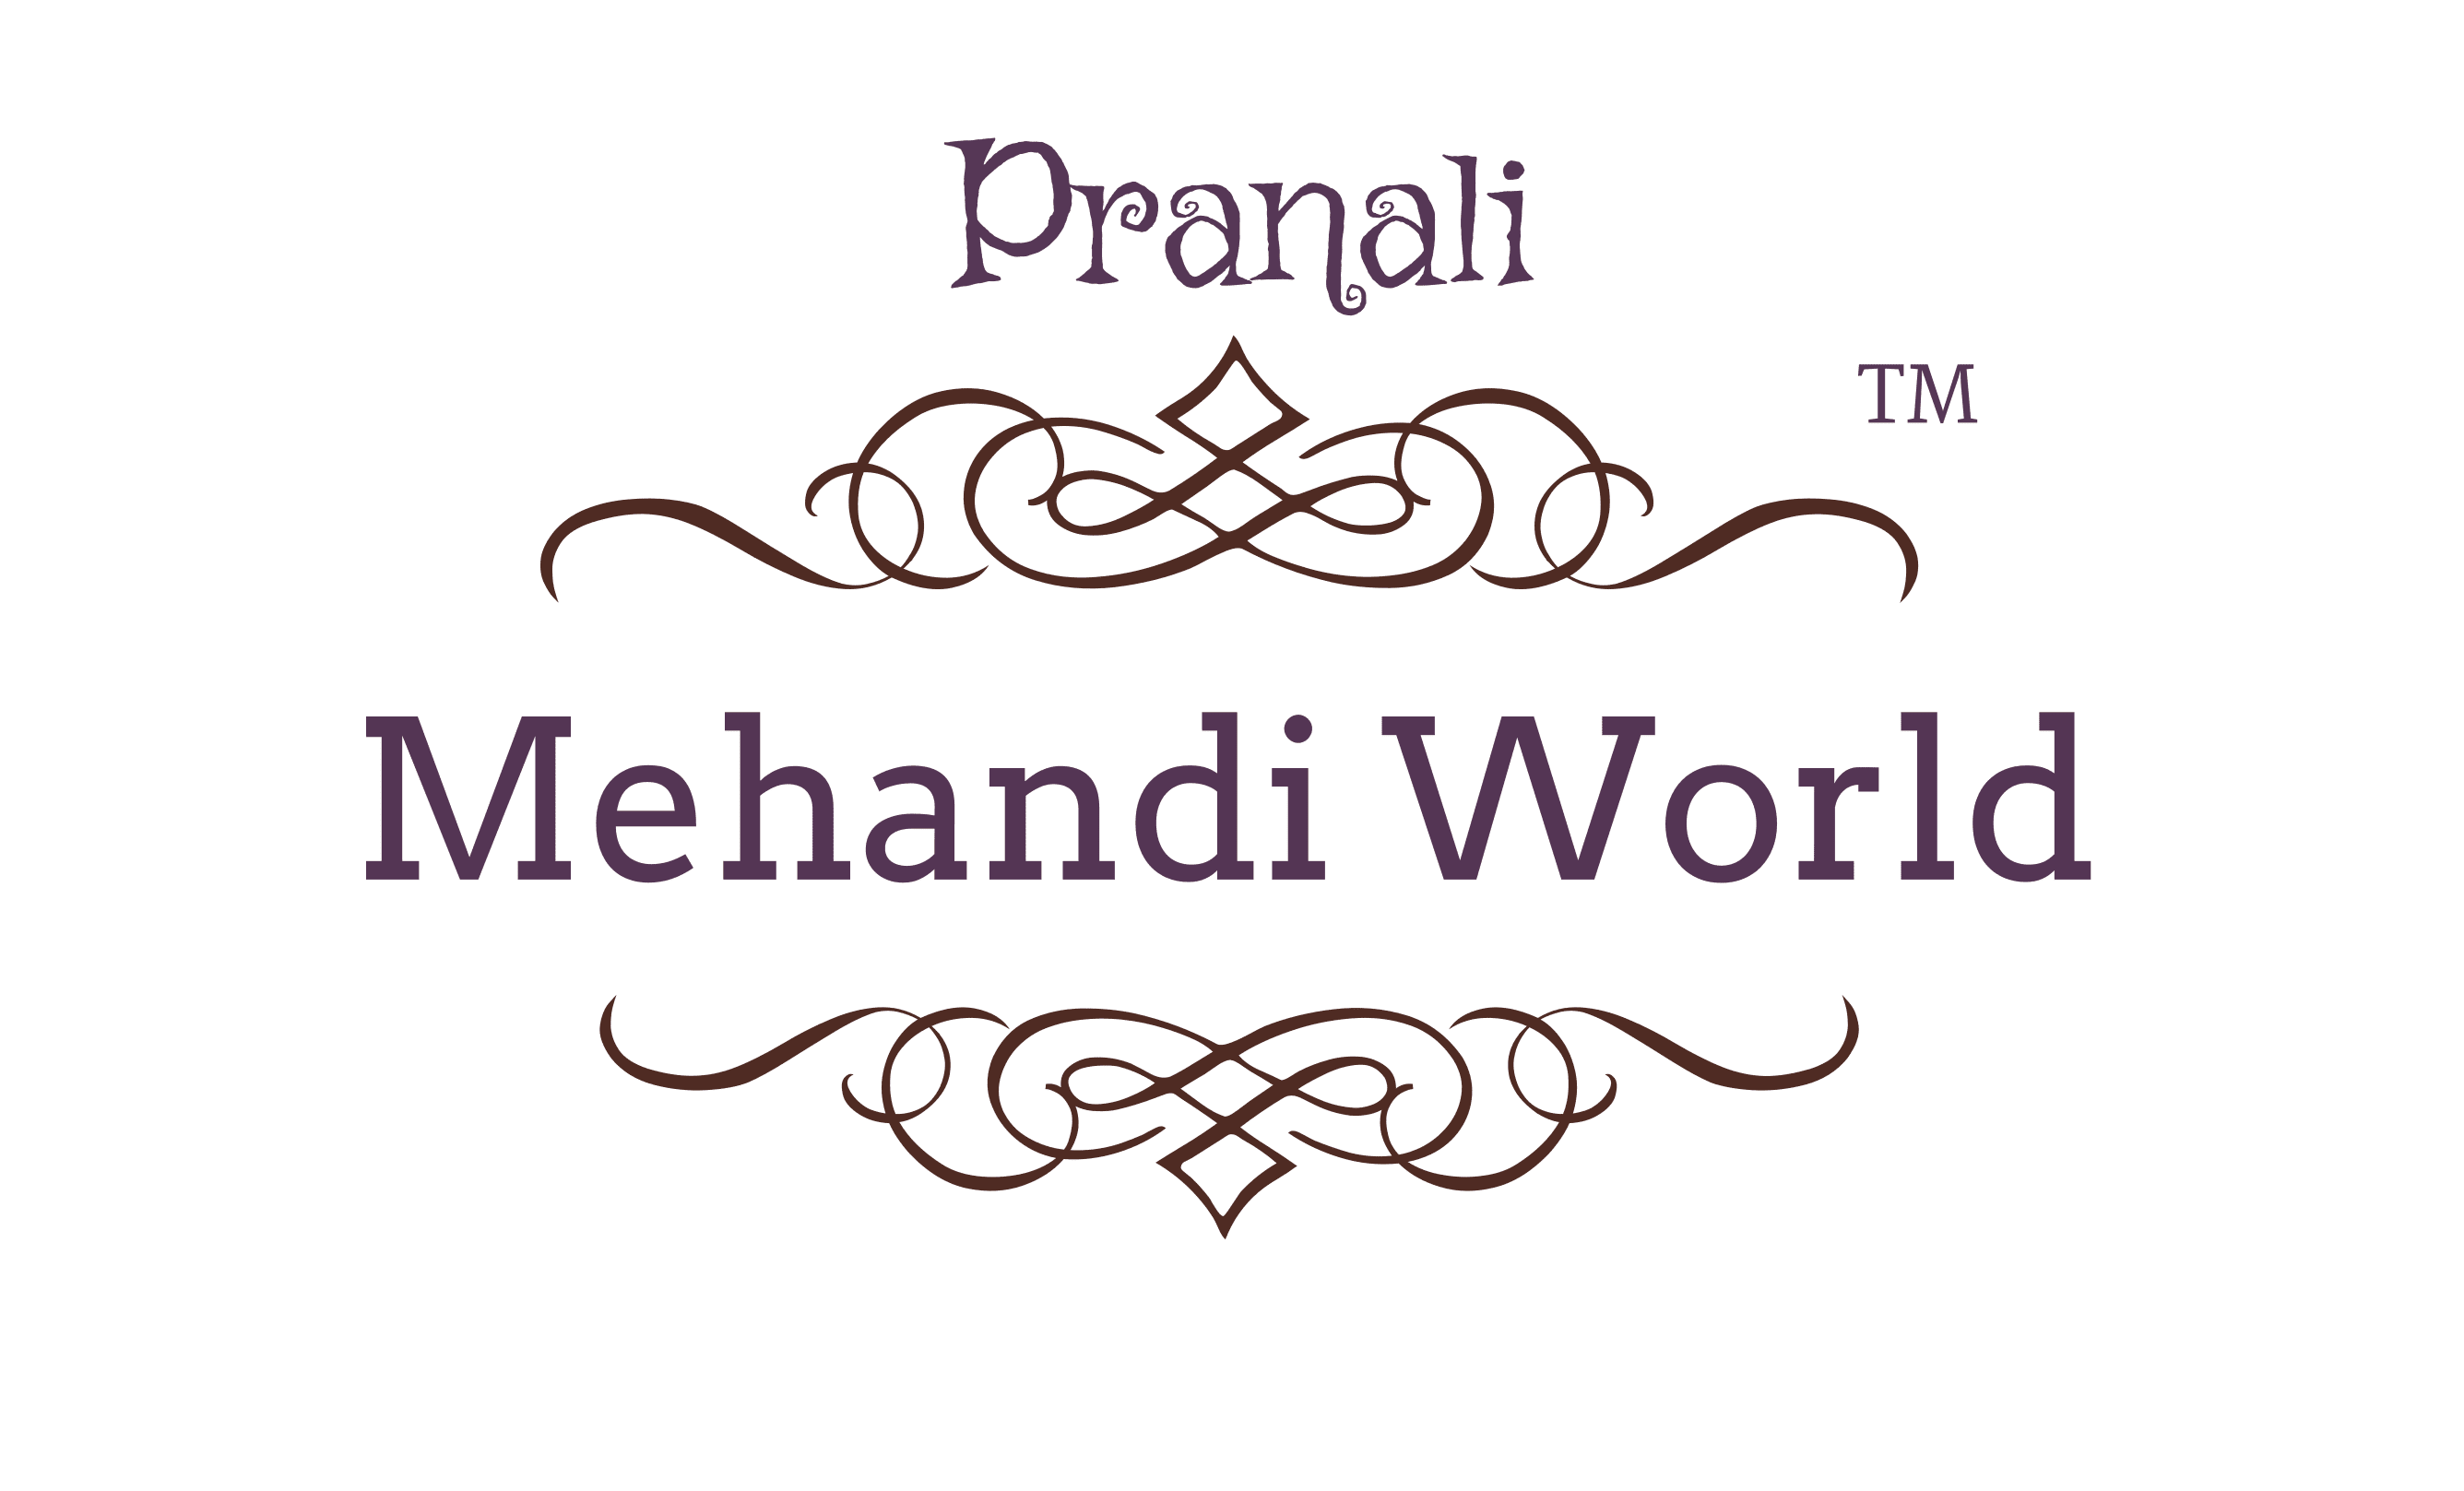 Pranali Mehandi World